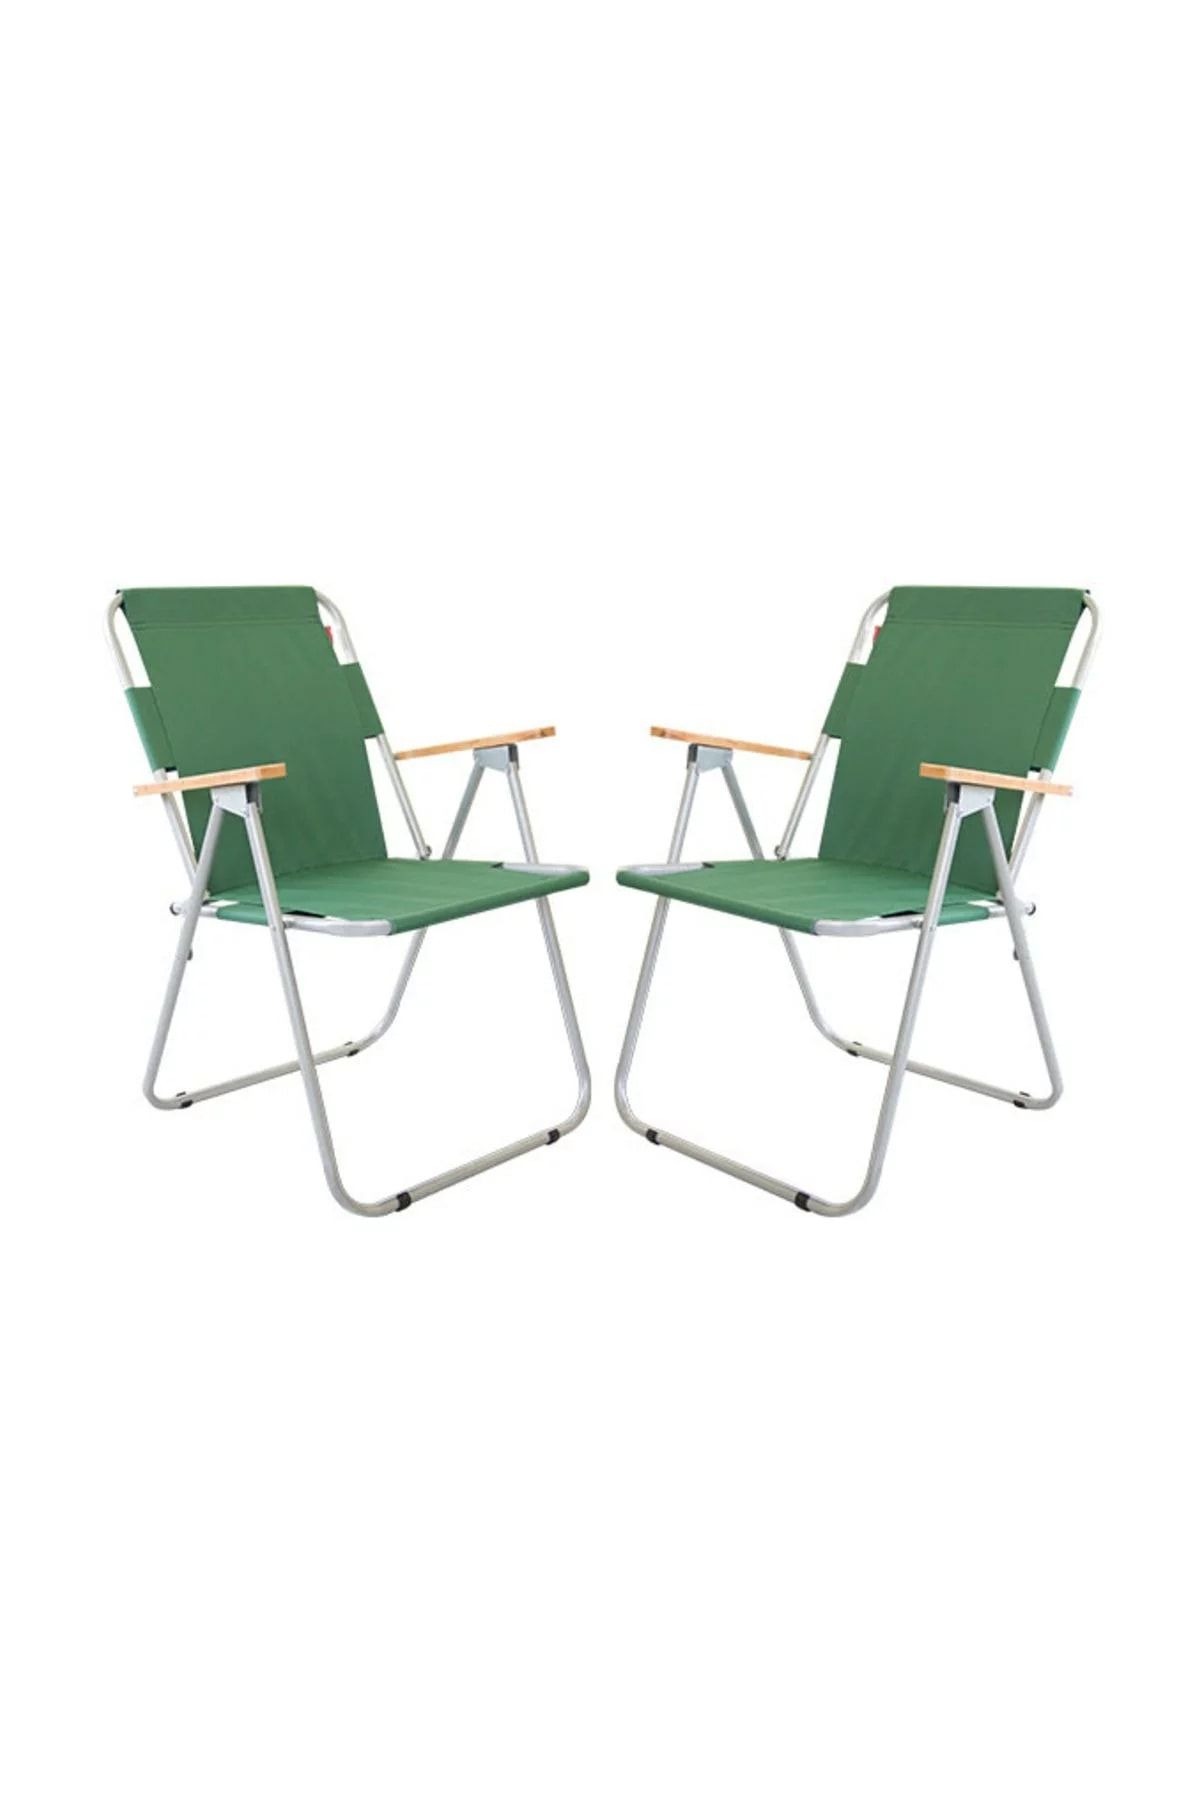 Bofigo Katlanabilir 2 Adet Bahçe Sandalyesi Katlanır Sandalye Balkon Sandalyesi Yeşil 2 Kişilik Yeşil Meta